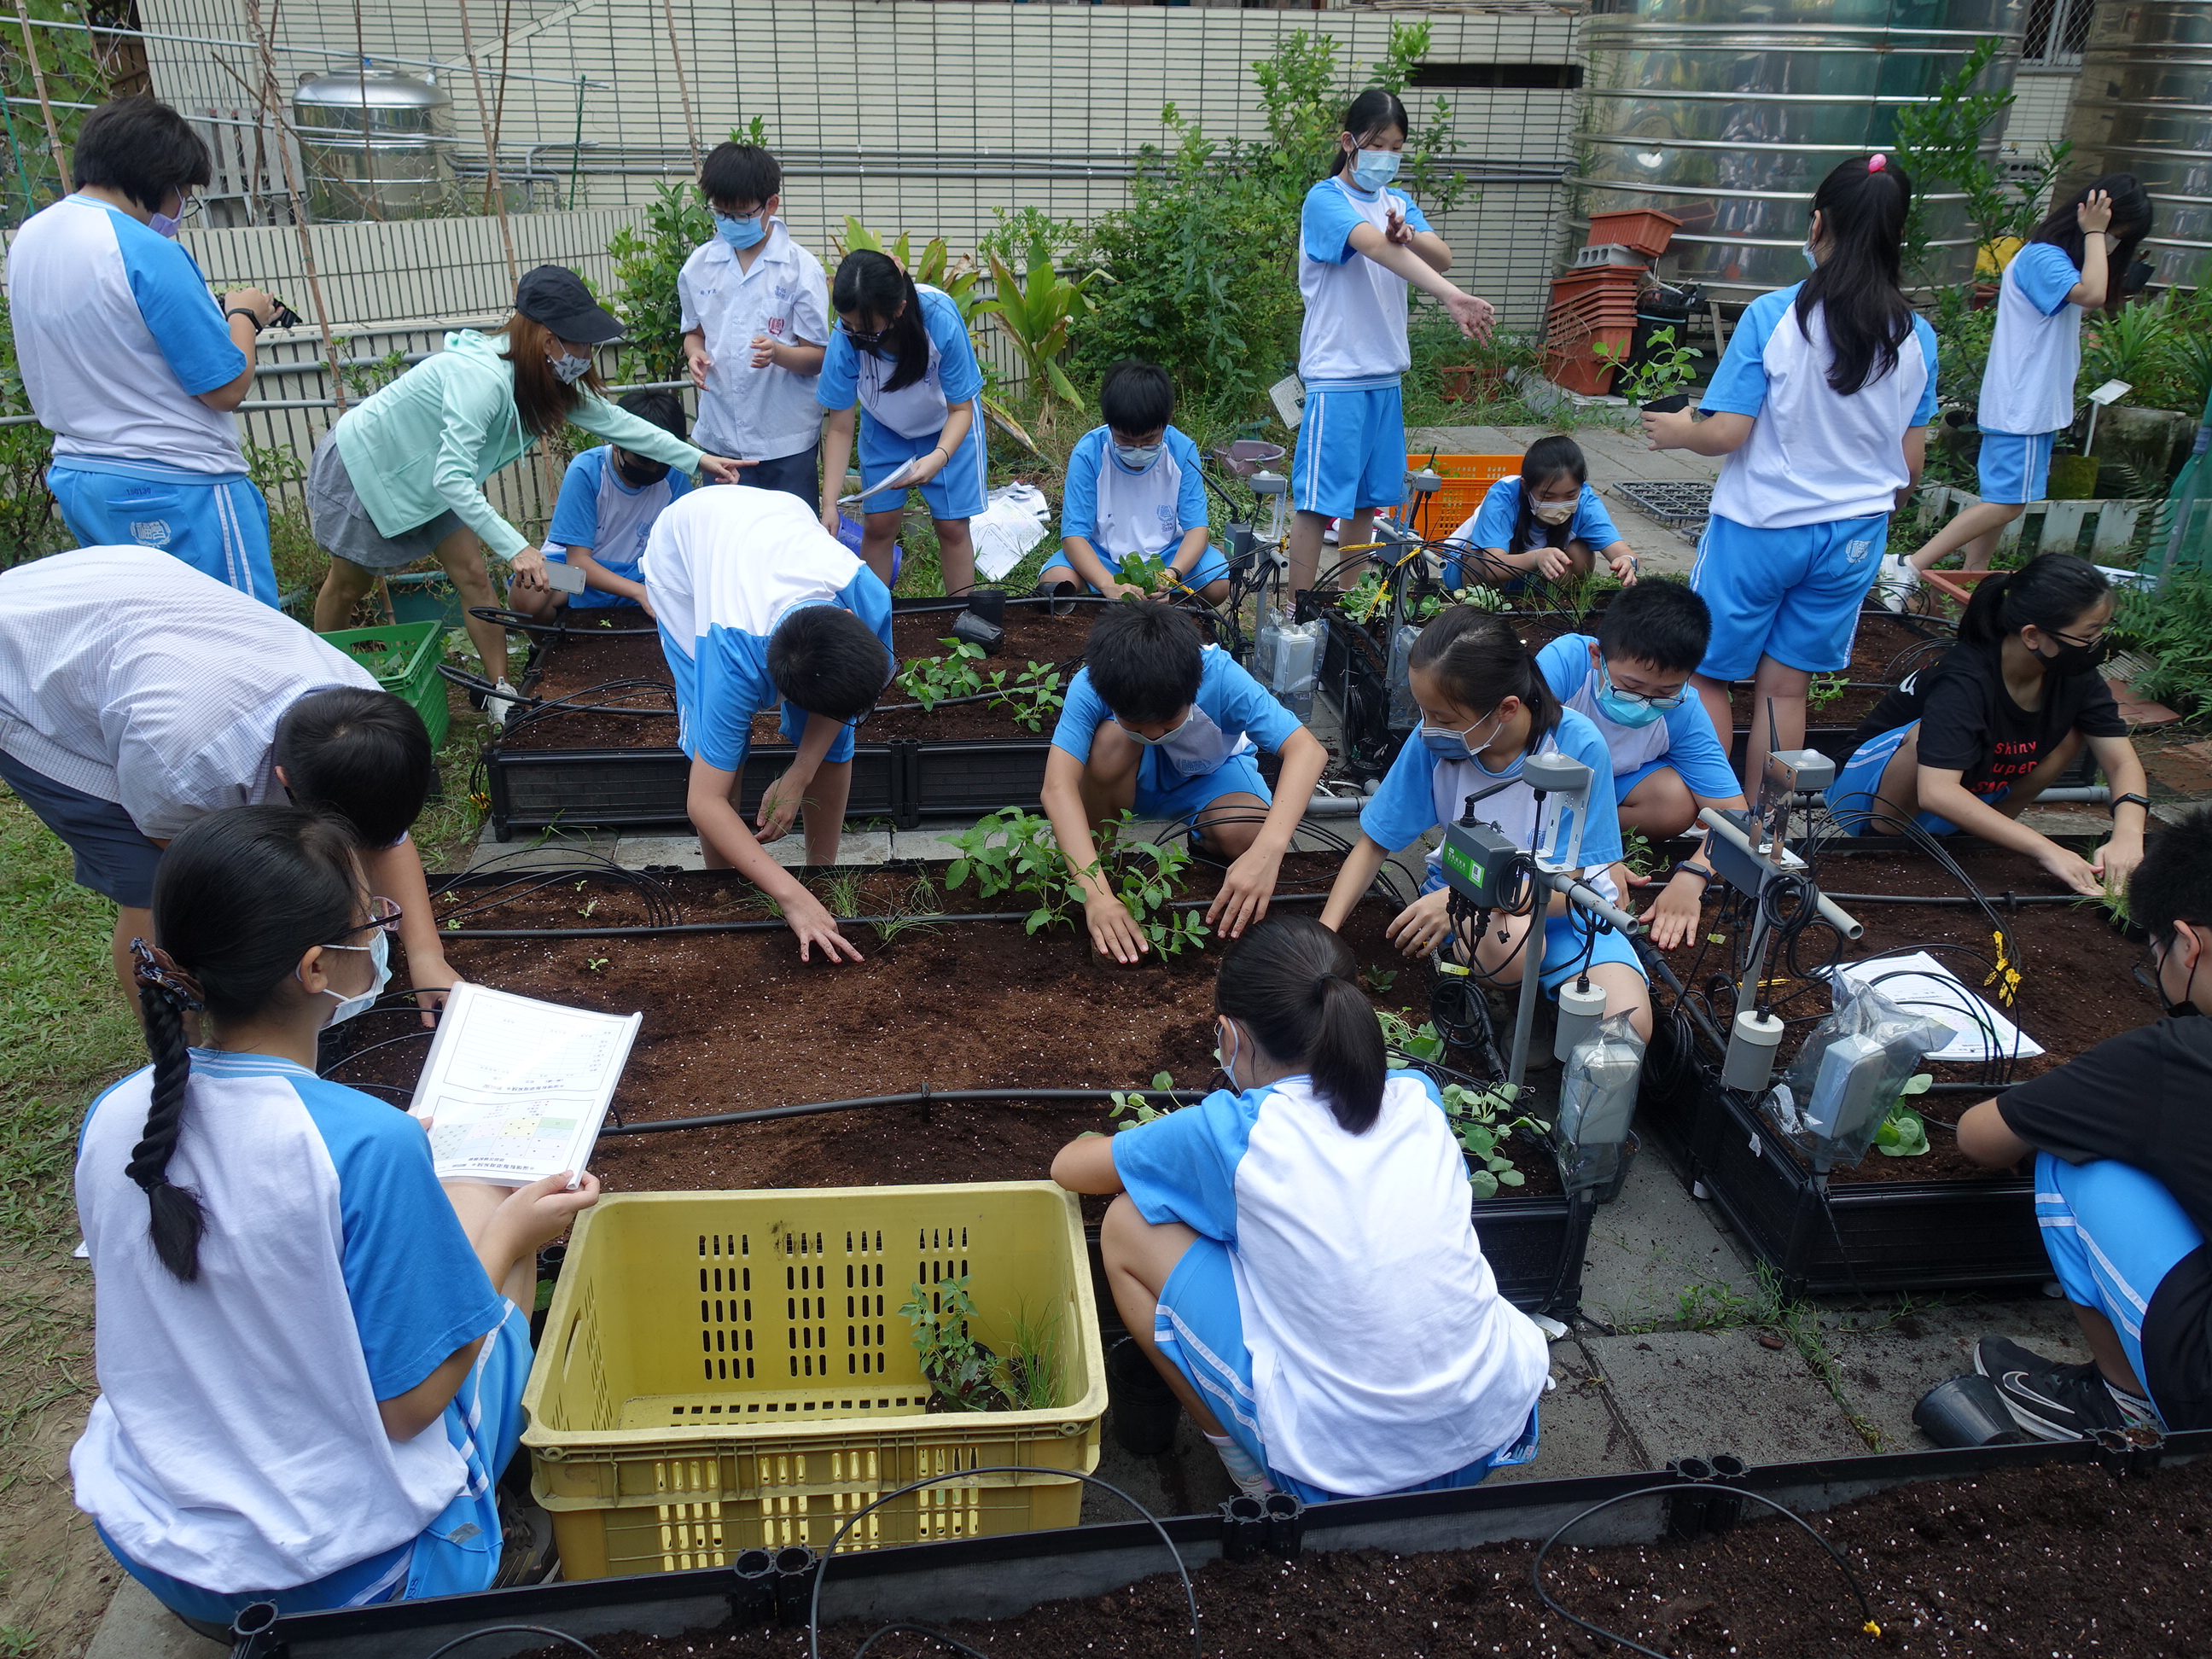 同學們依季節及場域日照量，在種植小區規劃適栽作物(左)，一起在聯課活動時定植菜苗(右)